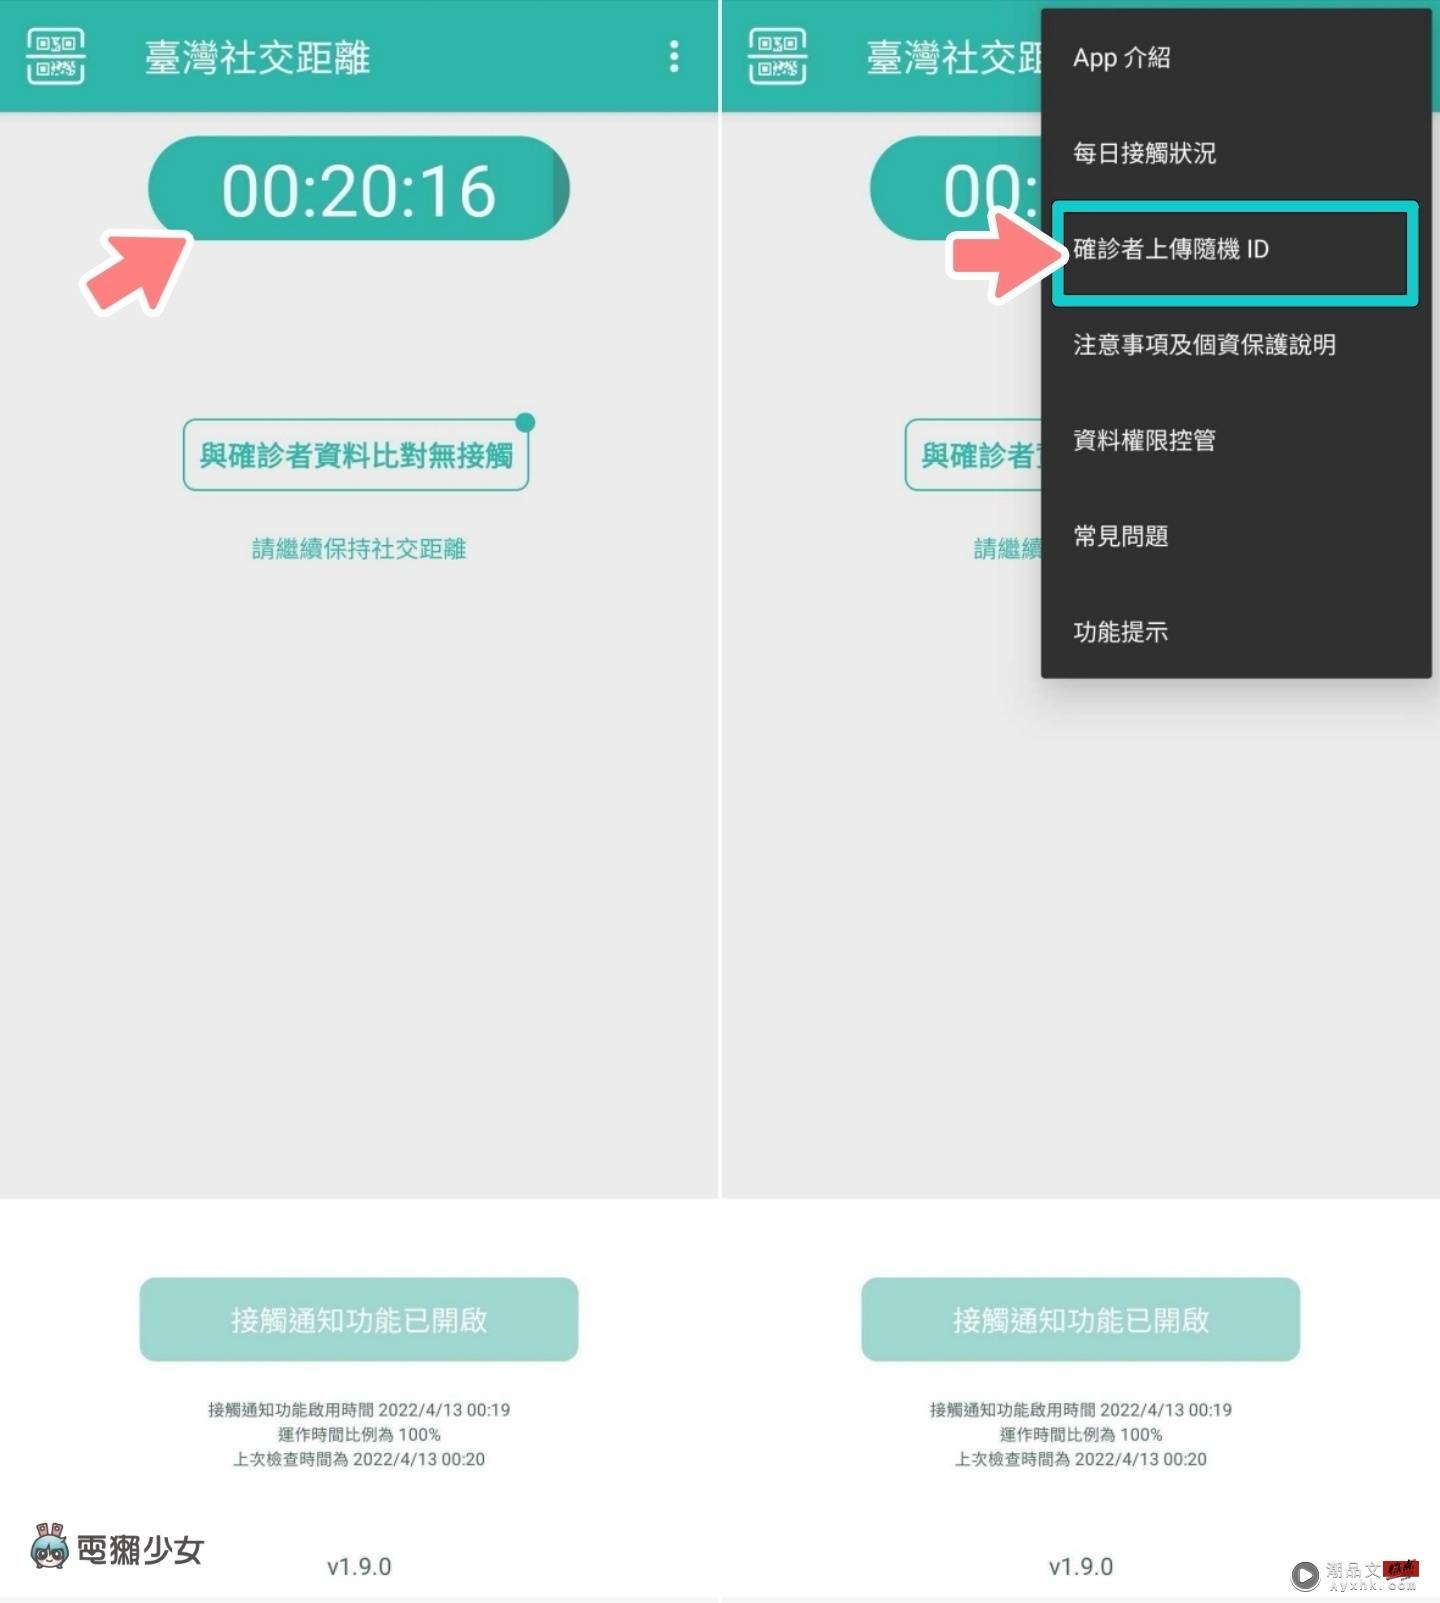 ‘ 中国台湾社交距离 ’推出更新！至特定场域出示 App 画面可免扫简讯实联制 数码科技 图2张